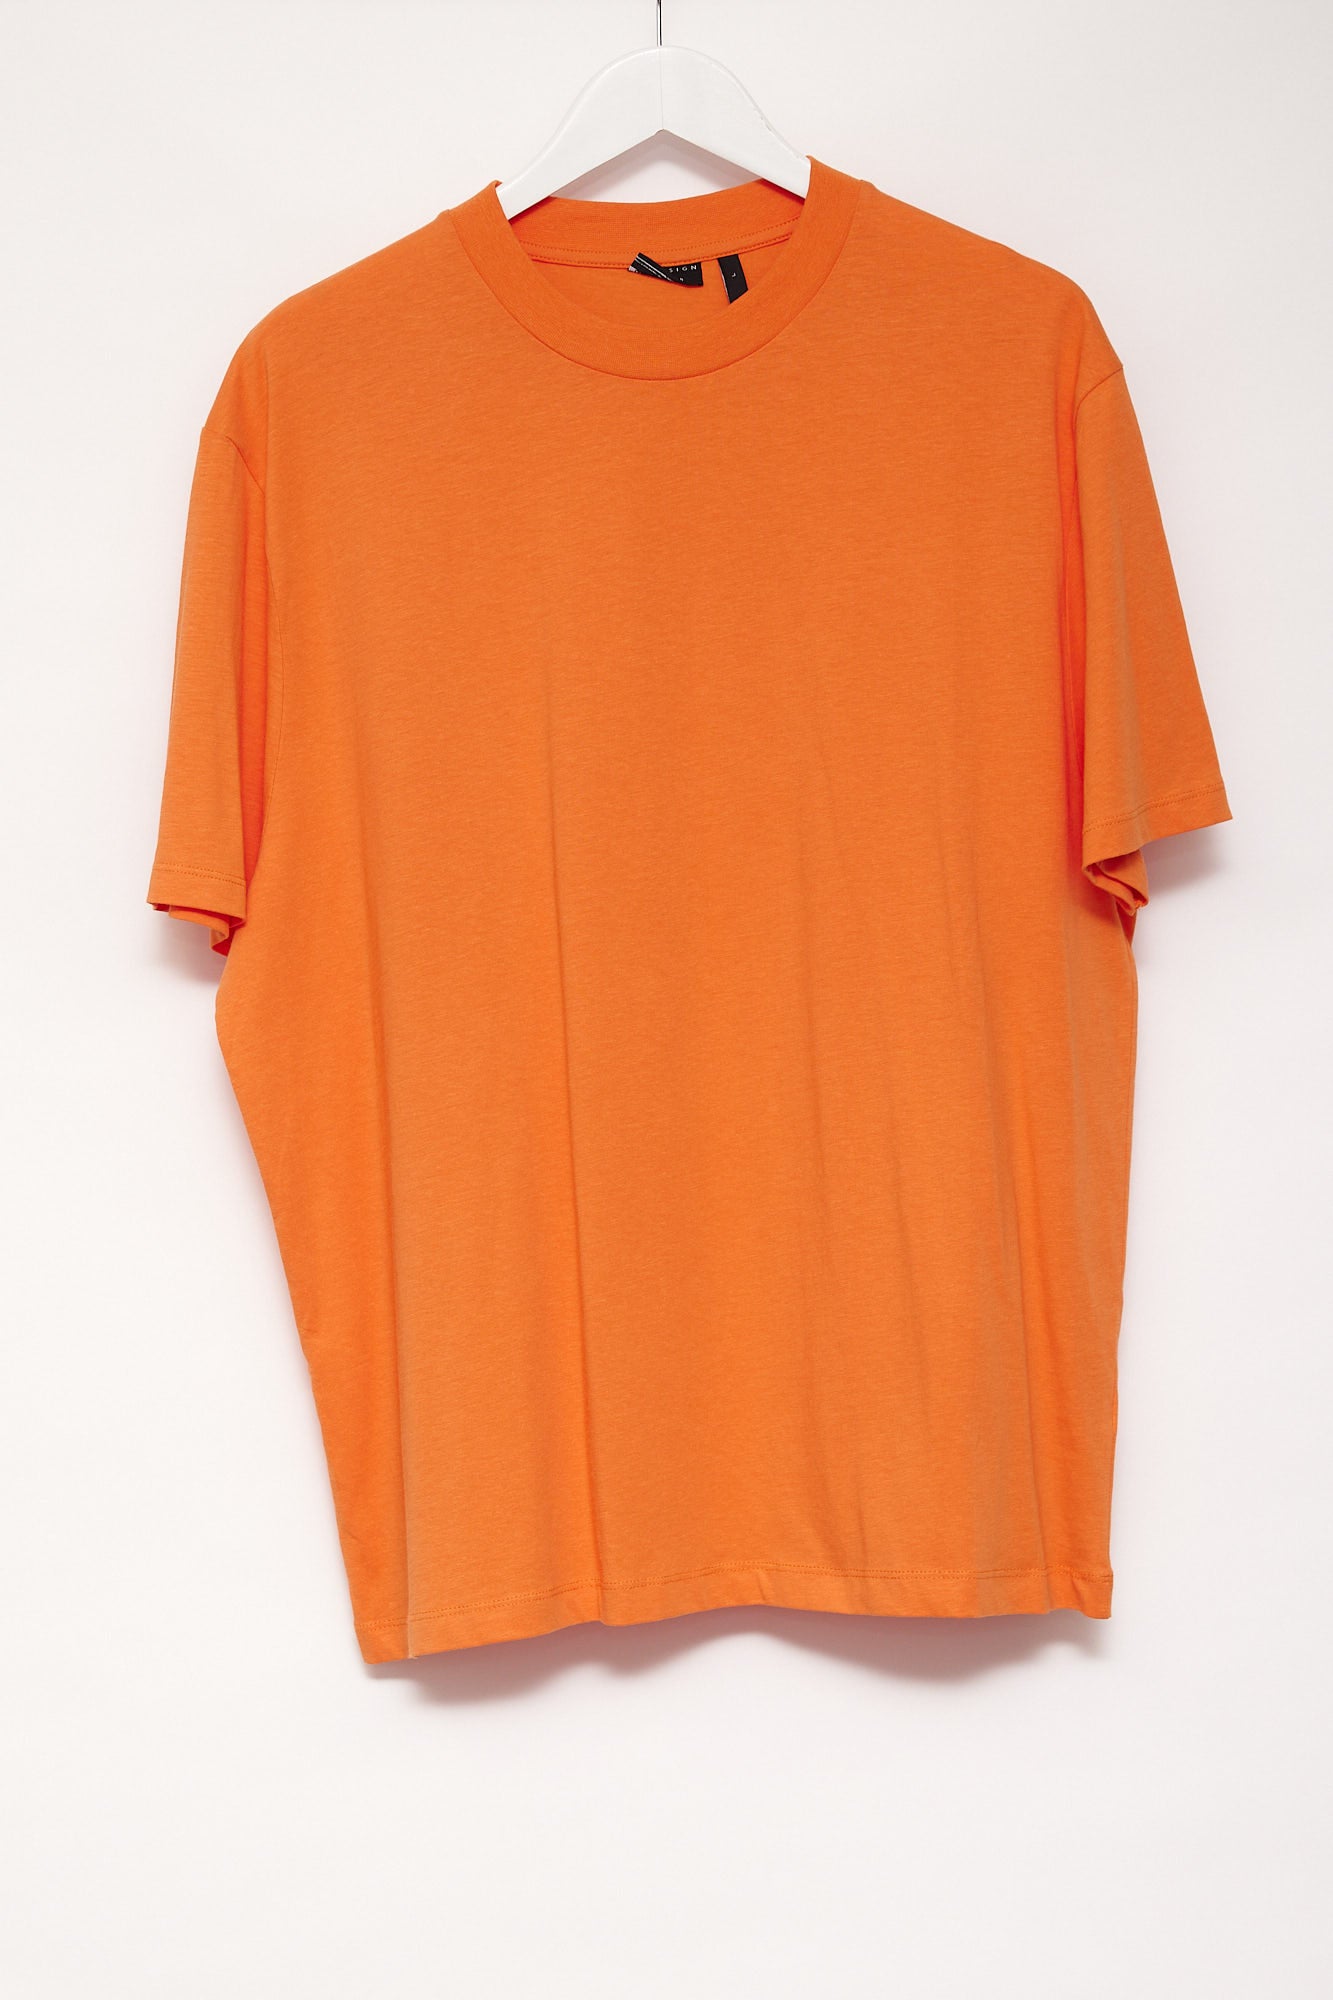 Mens ASOS Orange Oversized T-shirt Size Large